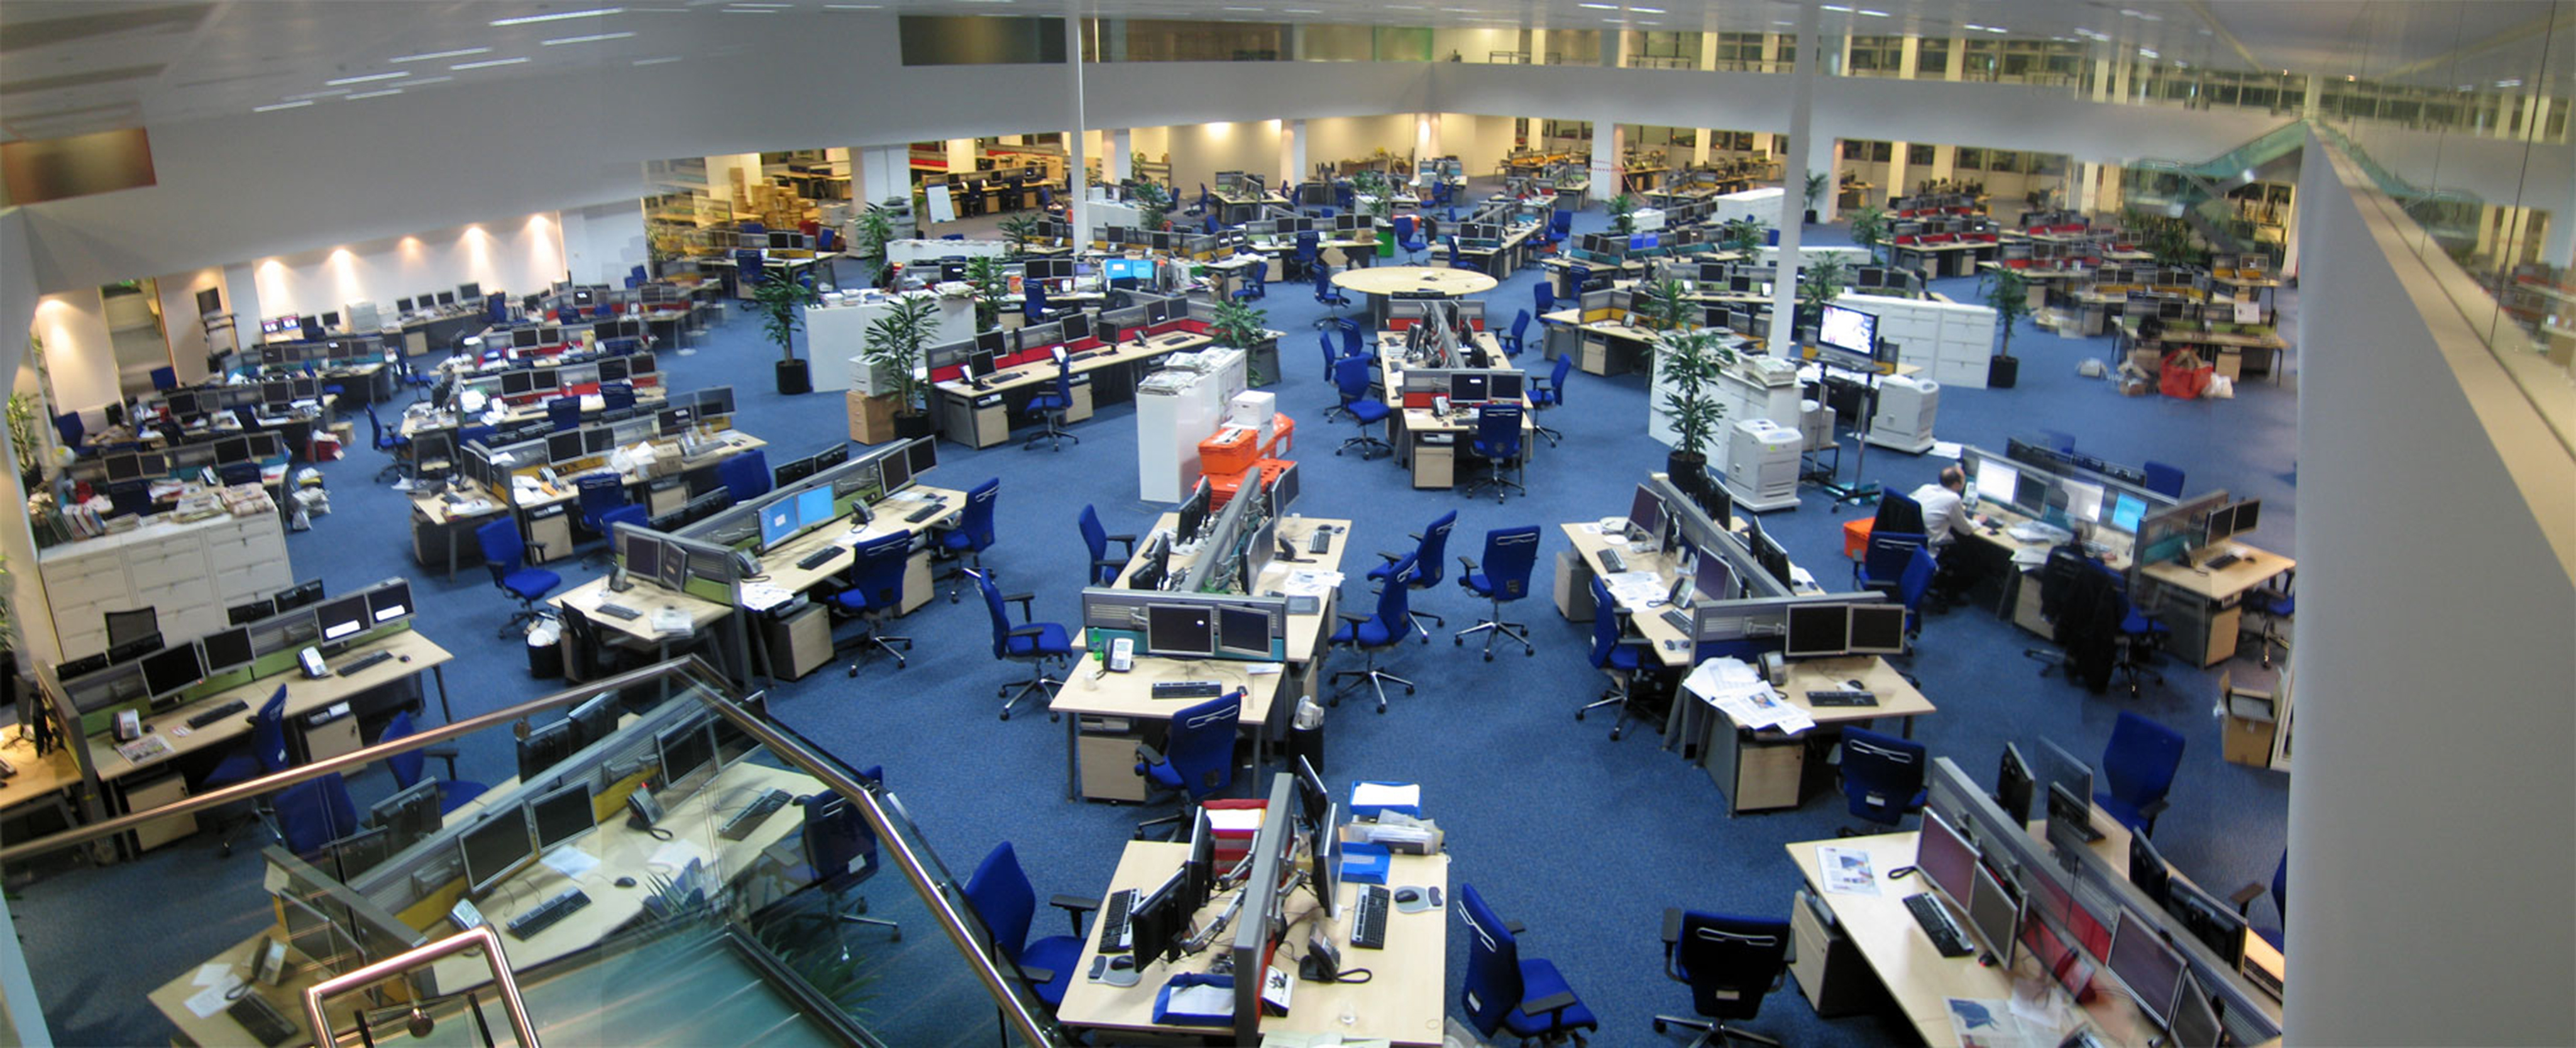 这张照片显示了一个大型的开放新闻室，有足够的空间容纳大约 200 名员工。